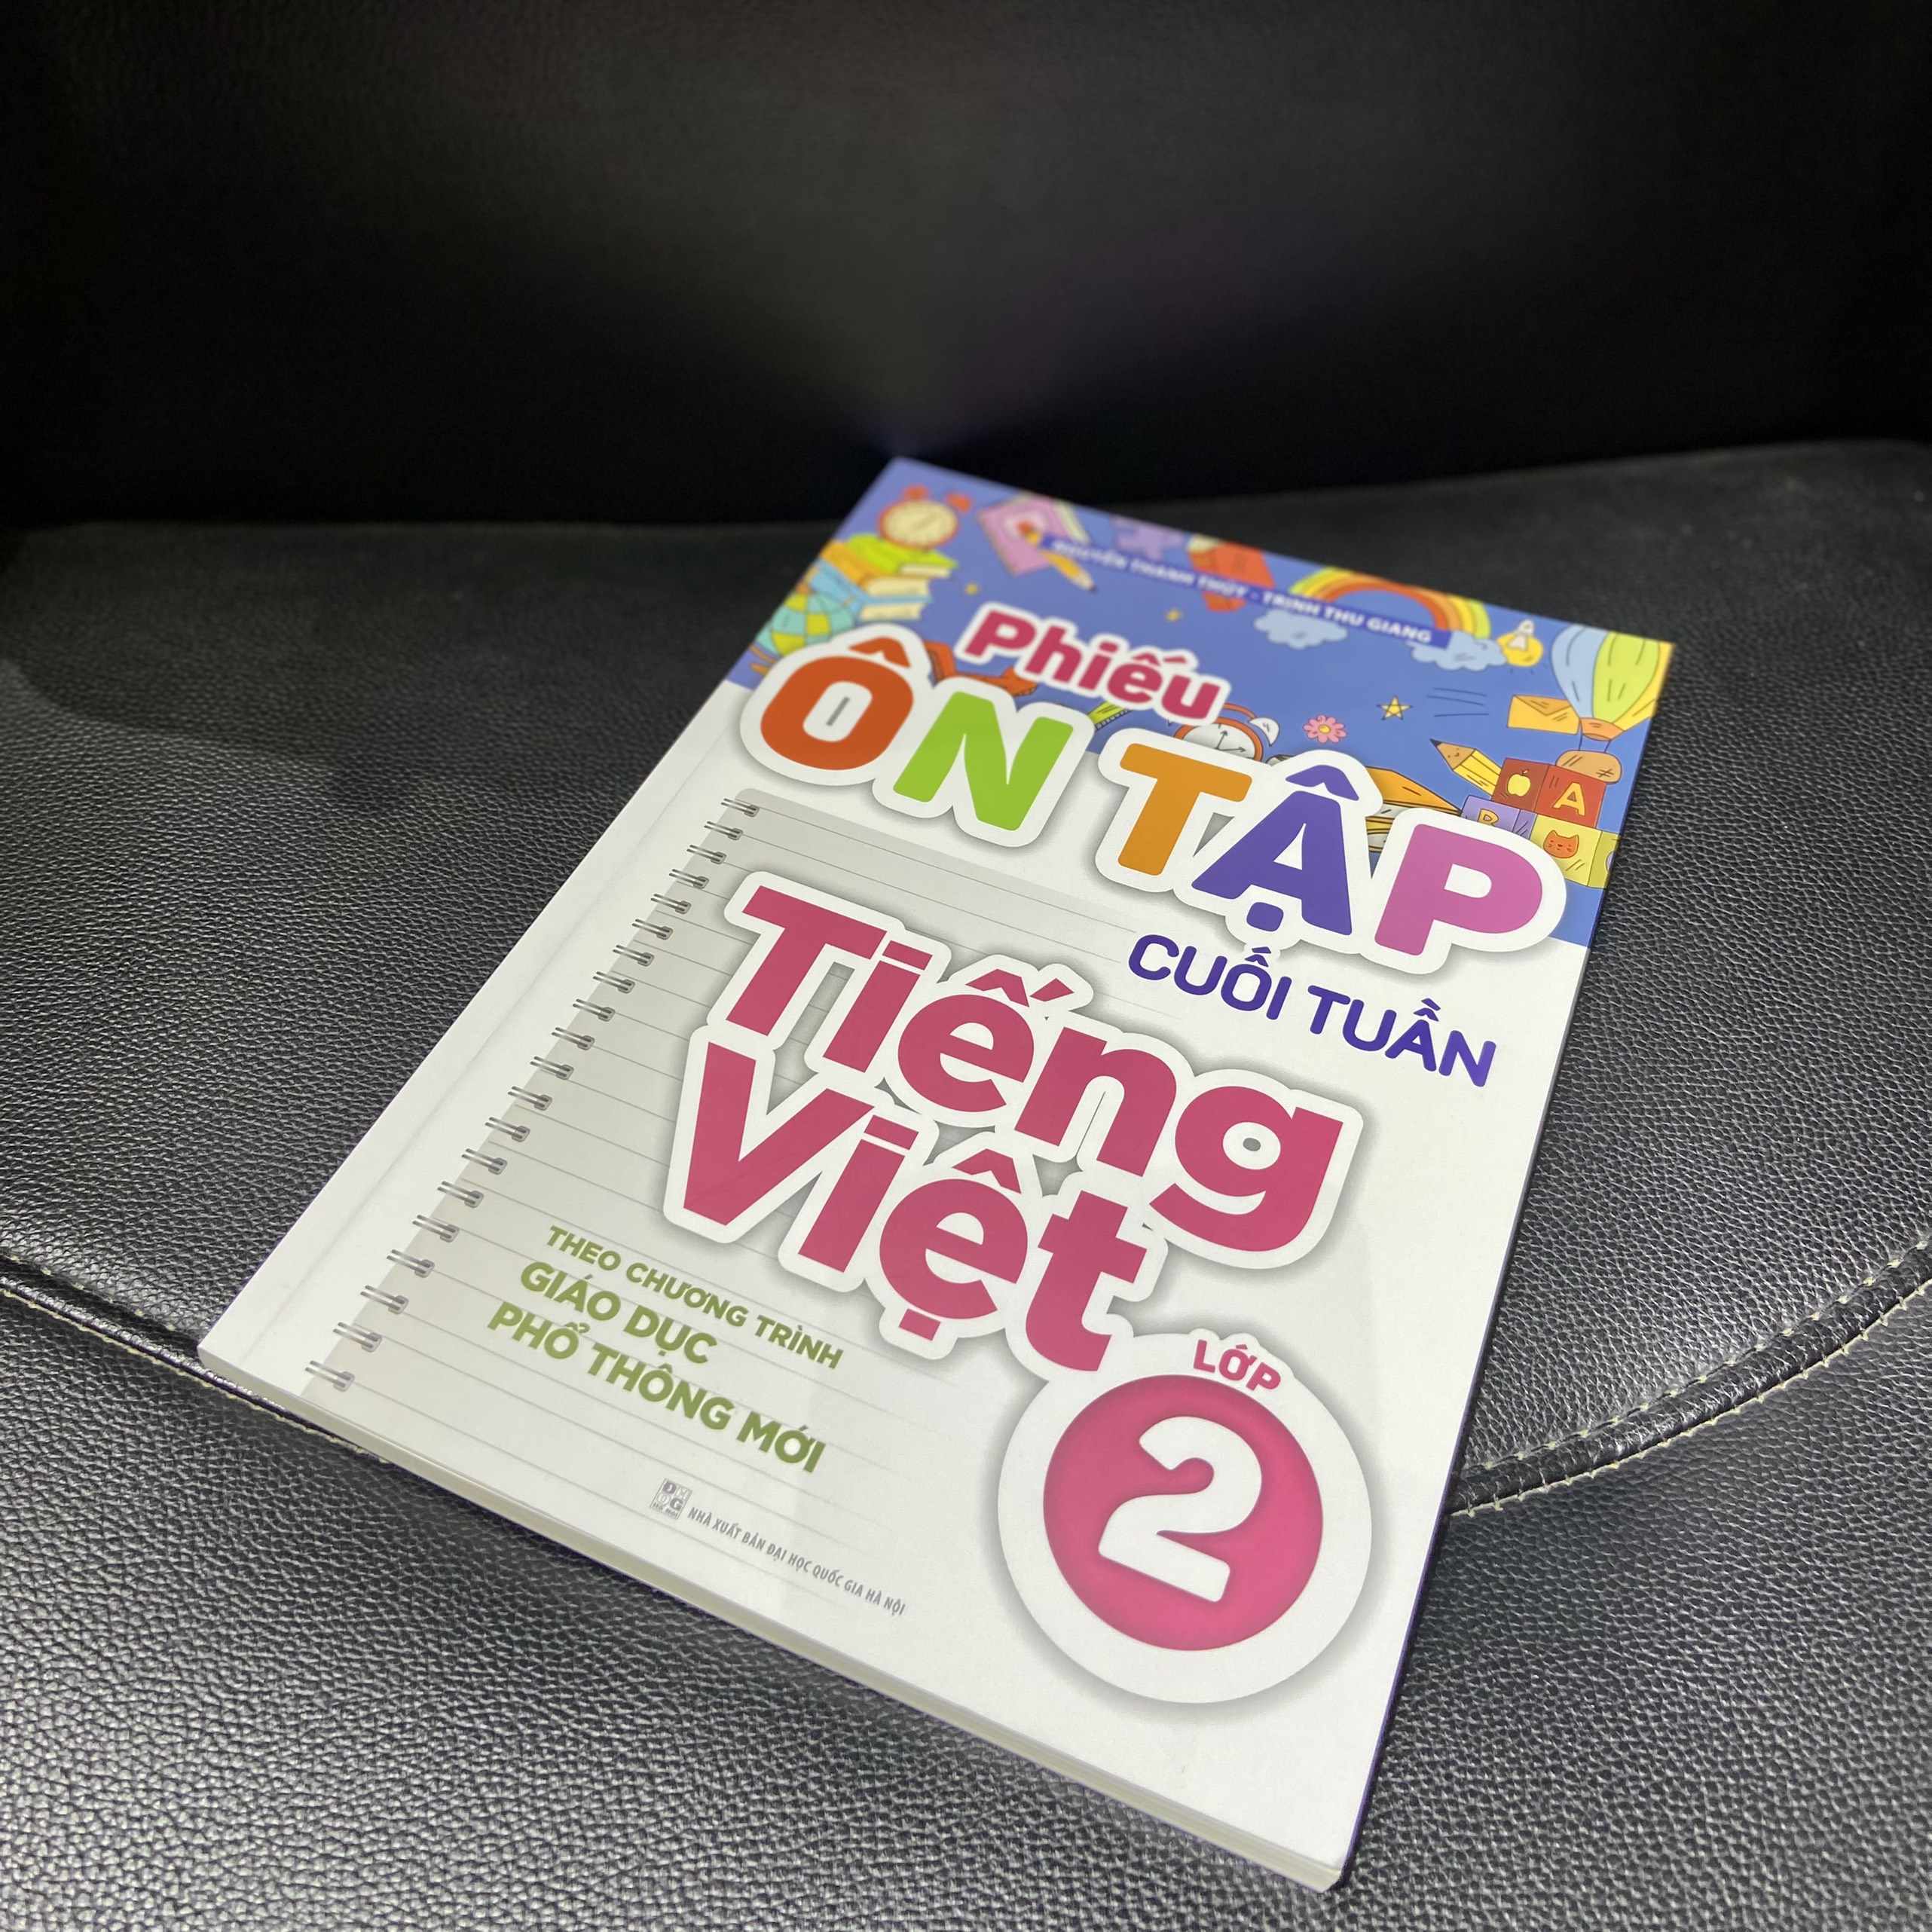 Sách: Phiếu Ôn Tập Cuối Tuần Tiếng Việt Lớp 2 - Theo Chương Trình Giáo Dục Phổ Thông Mới